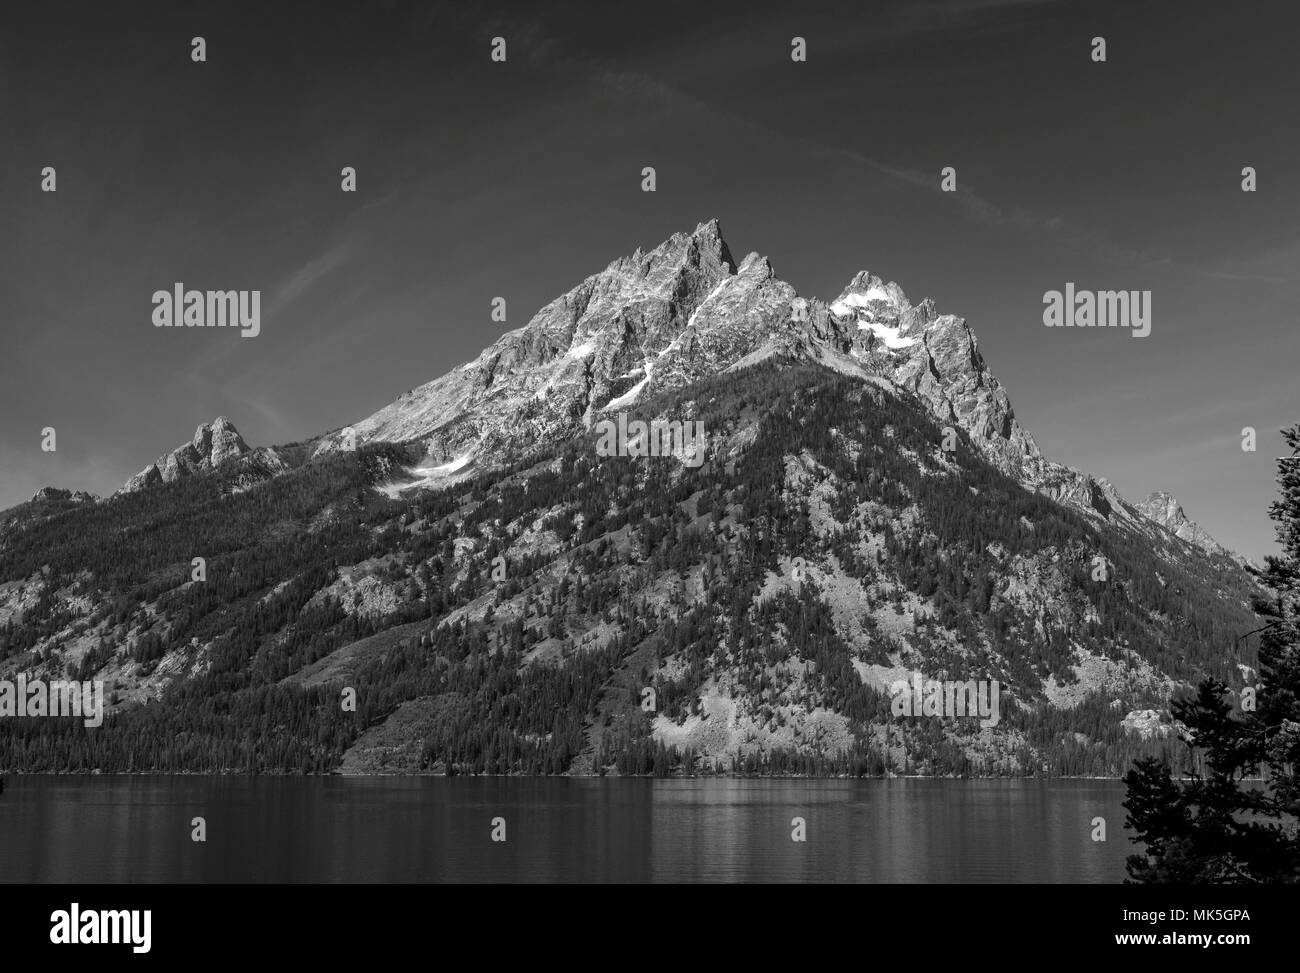 Les montagnes majestueuses en crête avec lake sous ciel. Noir et blanc. Banque D'Images